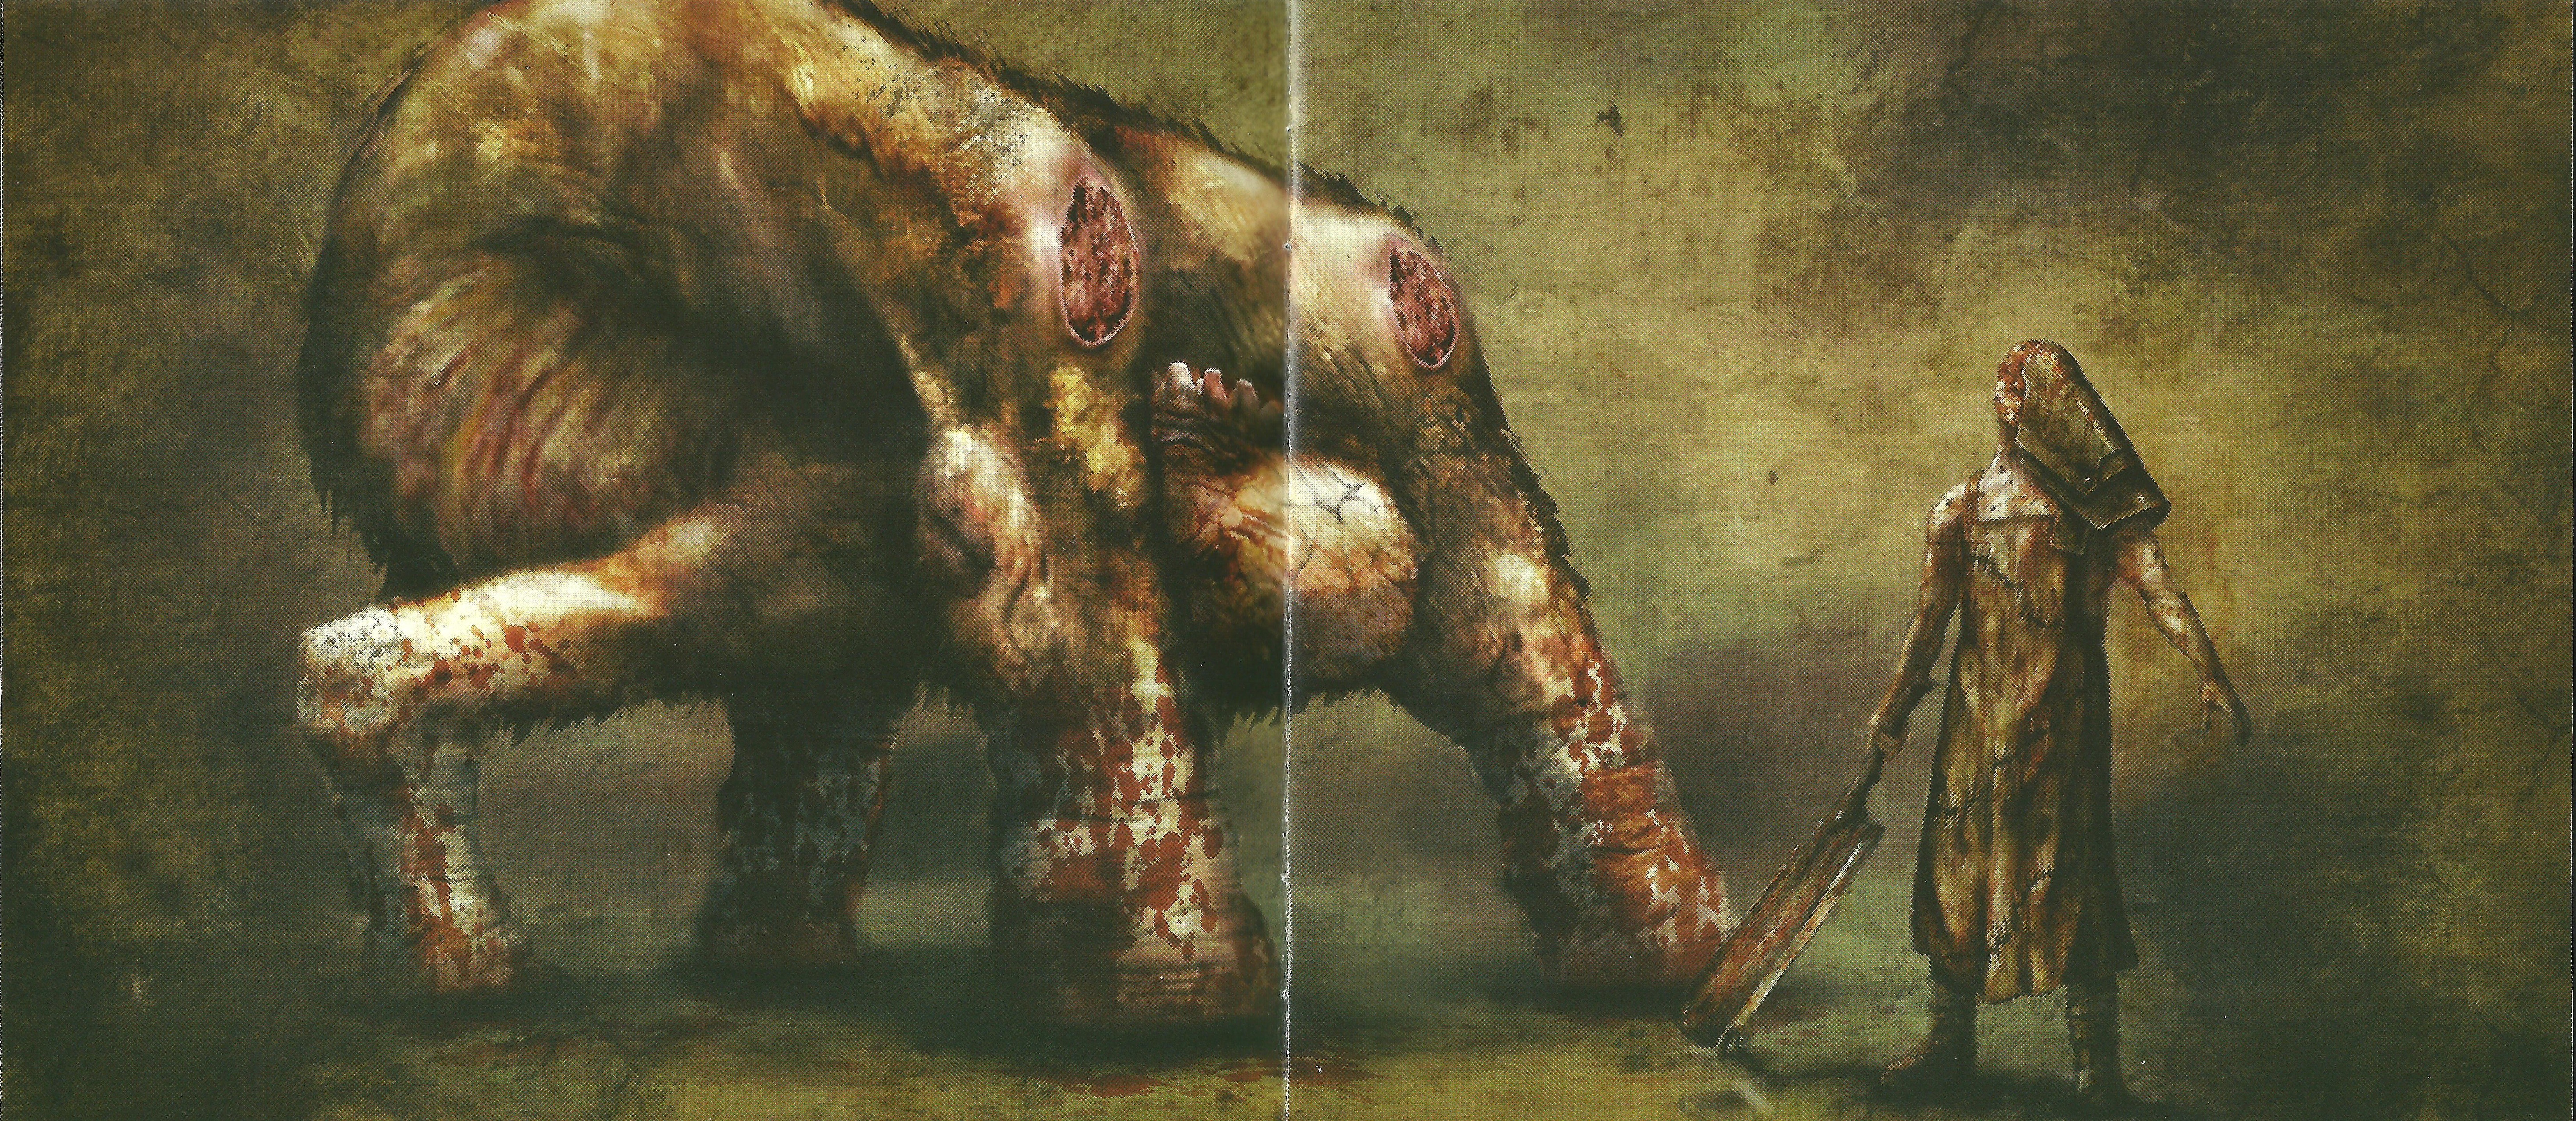 Silent Hill Wallpaper 4k - HD Wallpaper 